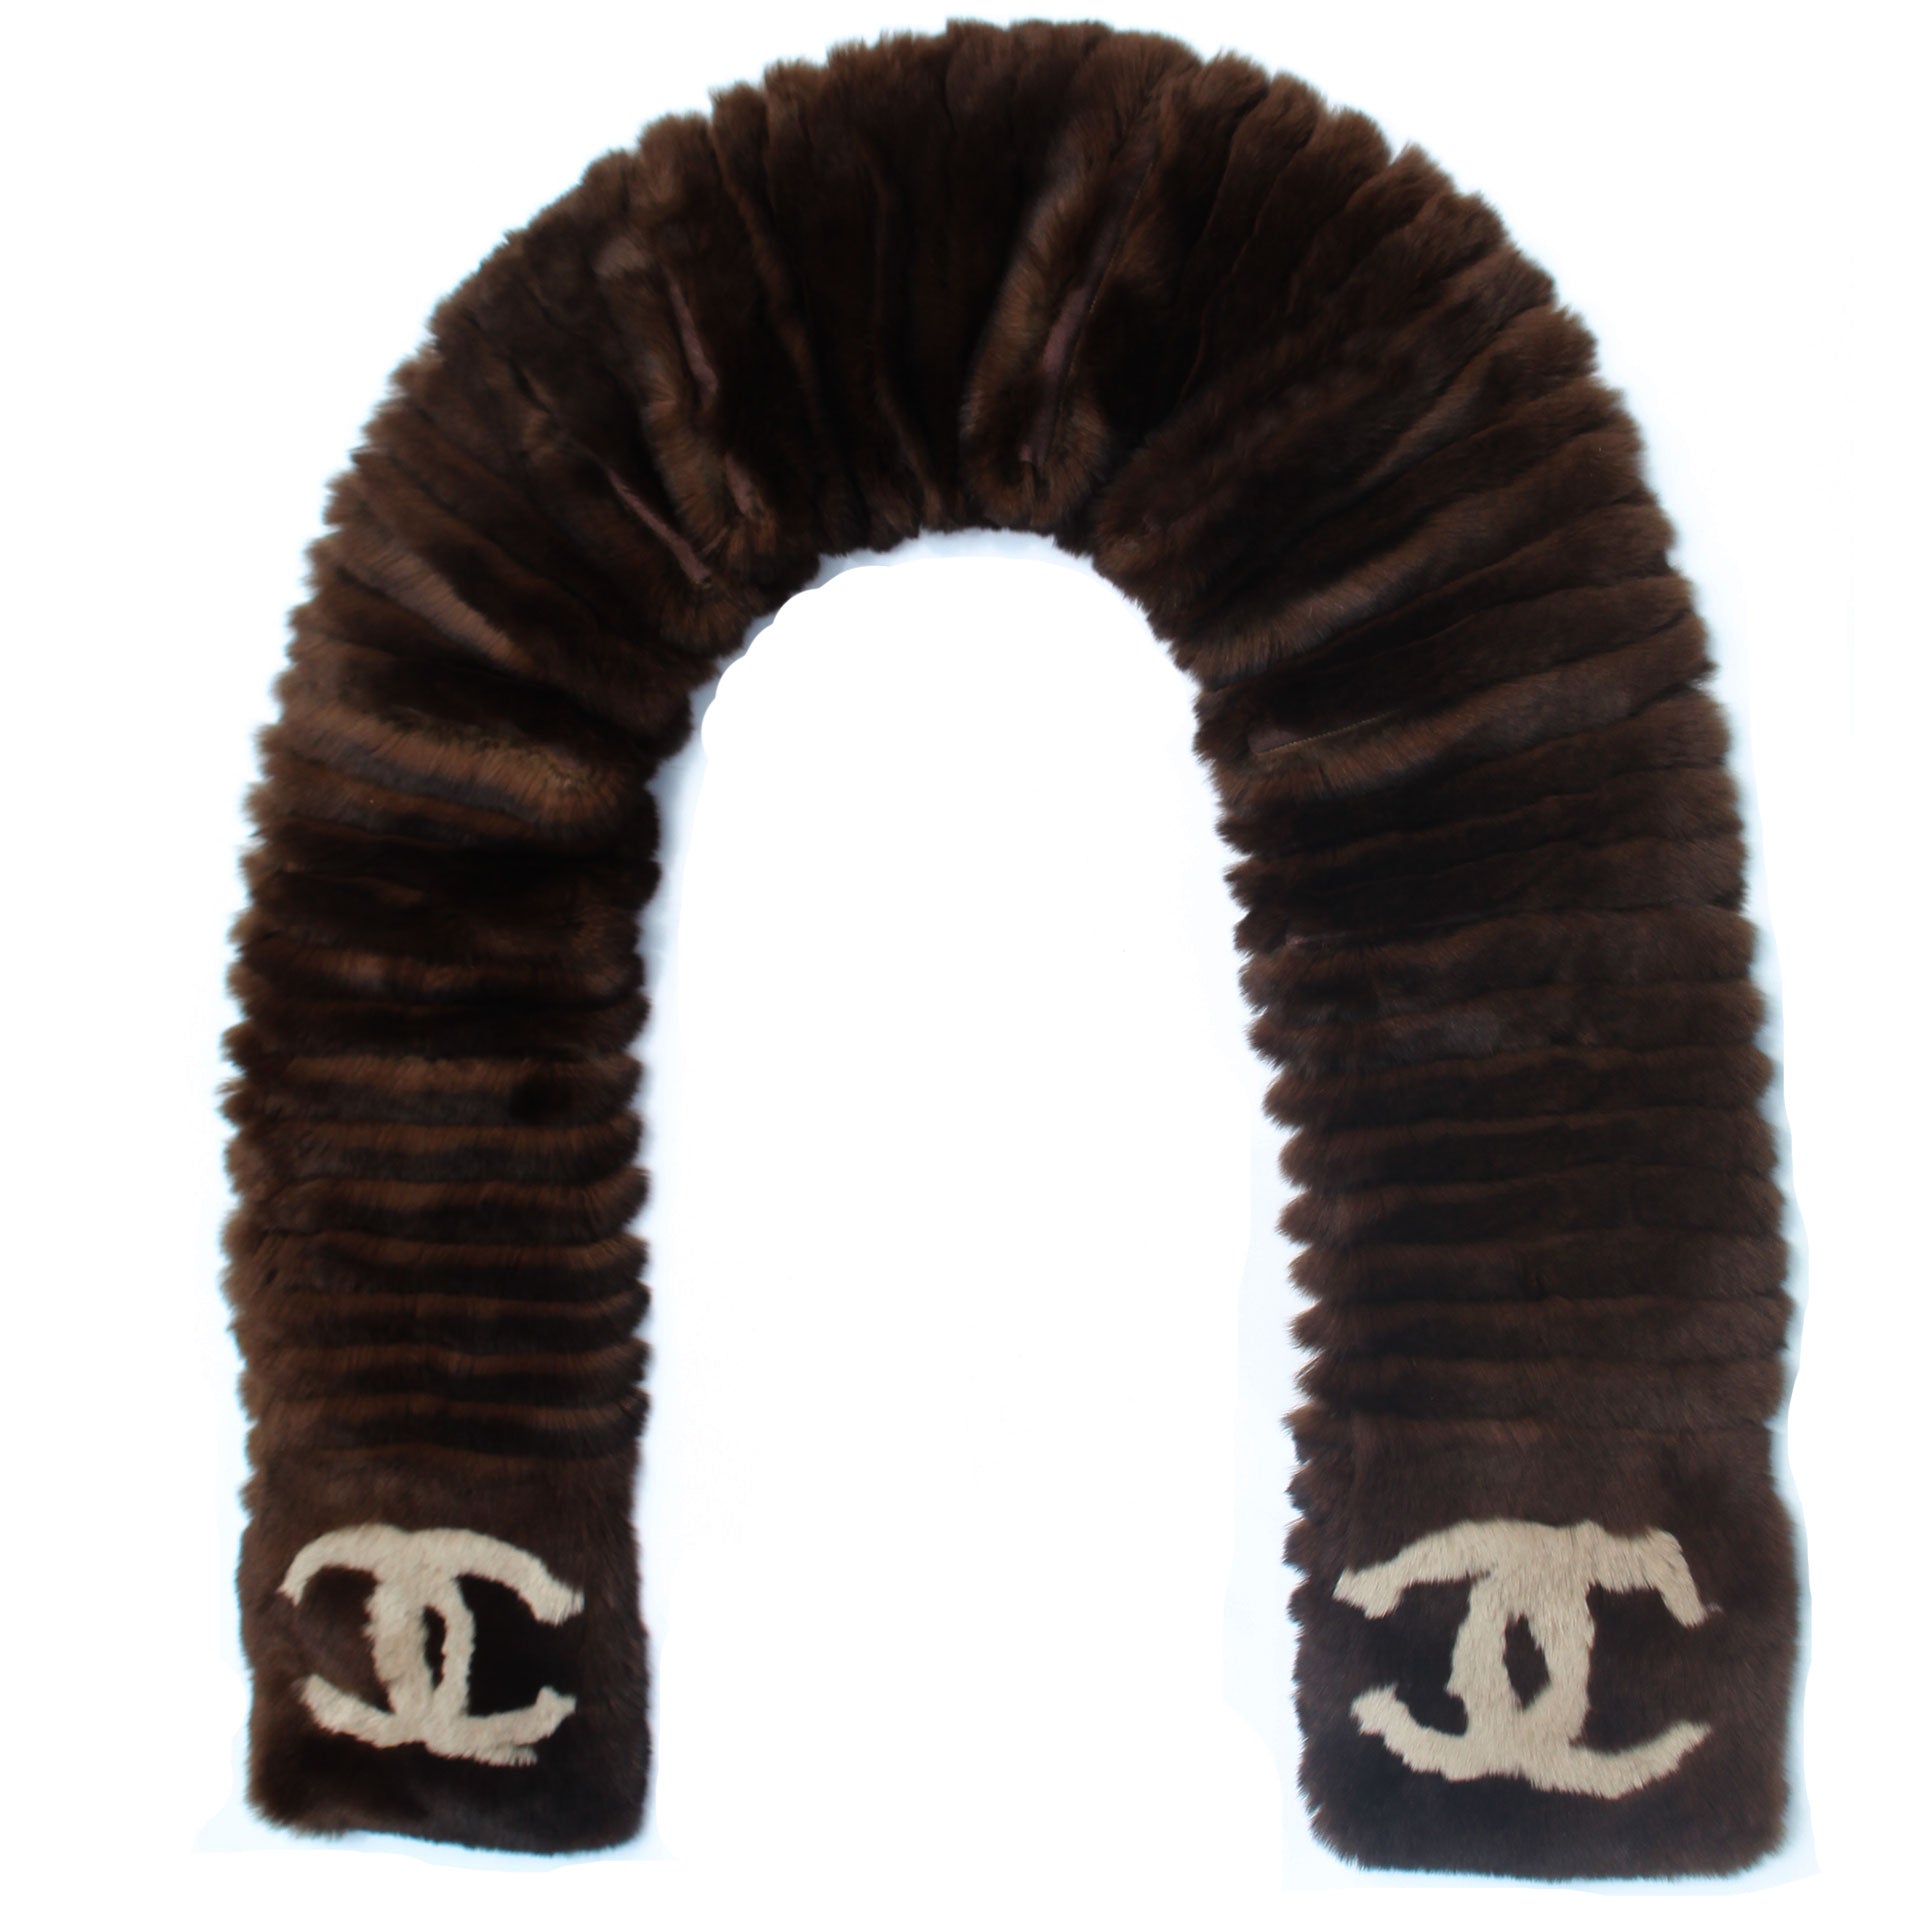 2014 Chanel Brown Orylag Fur Logo Super Soft Warm Winter Scarf/Wrap